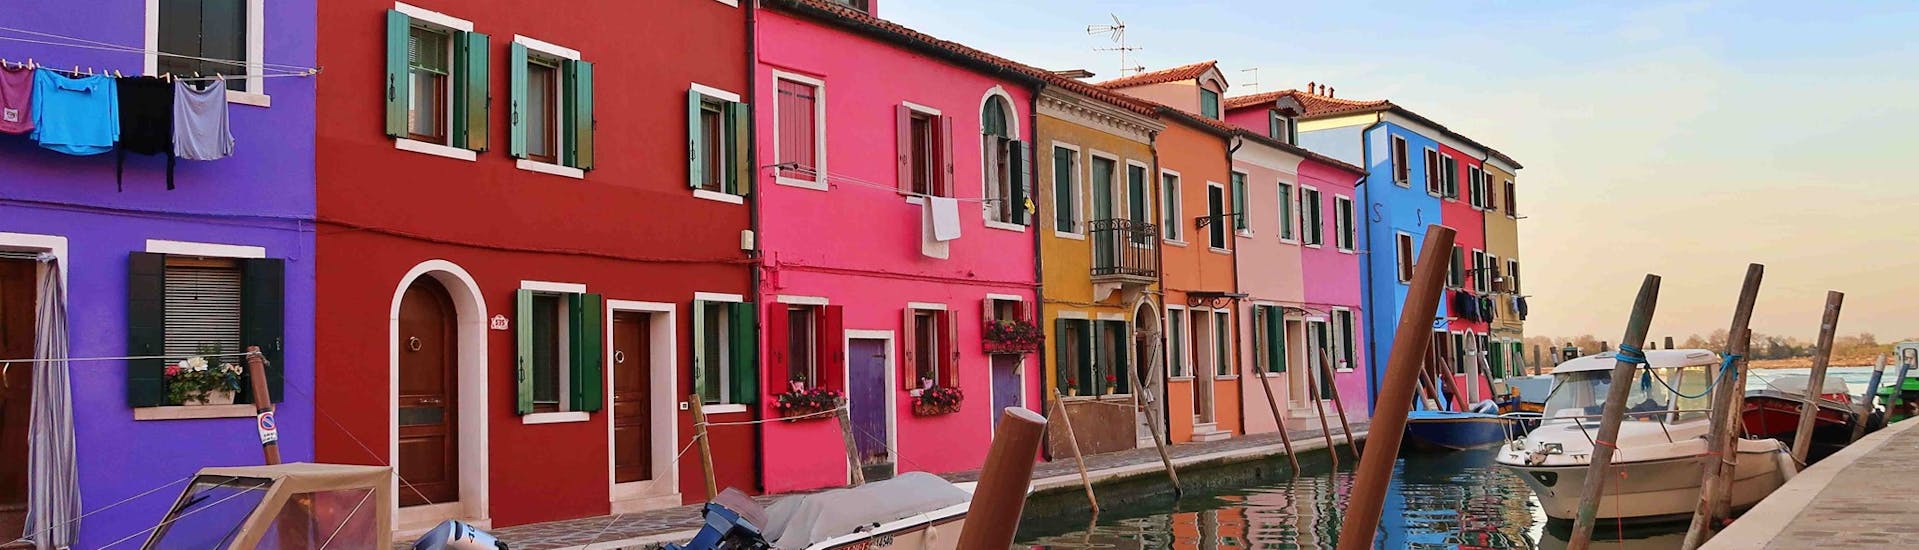 Een foto van de kleurrijke huizen genomen in Burano tijdens de boottocht van Punta Sabbioni naar Murano, Burano & Torcello met Il Doge di Venezia.